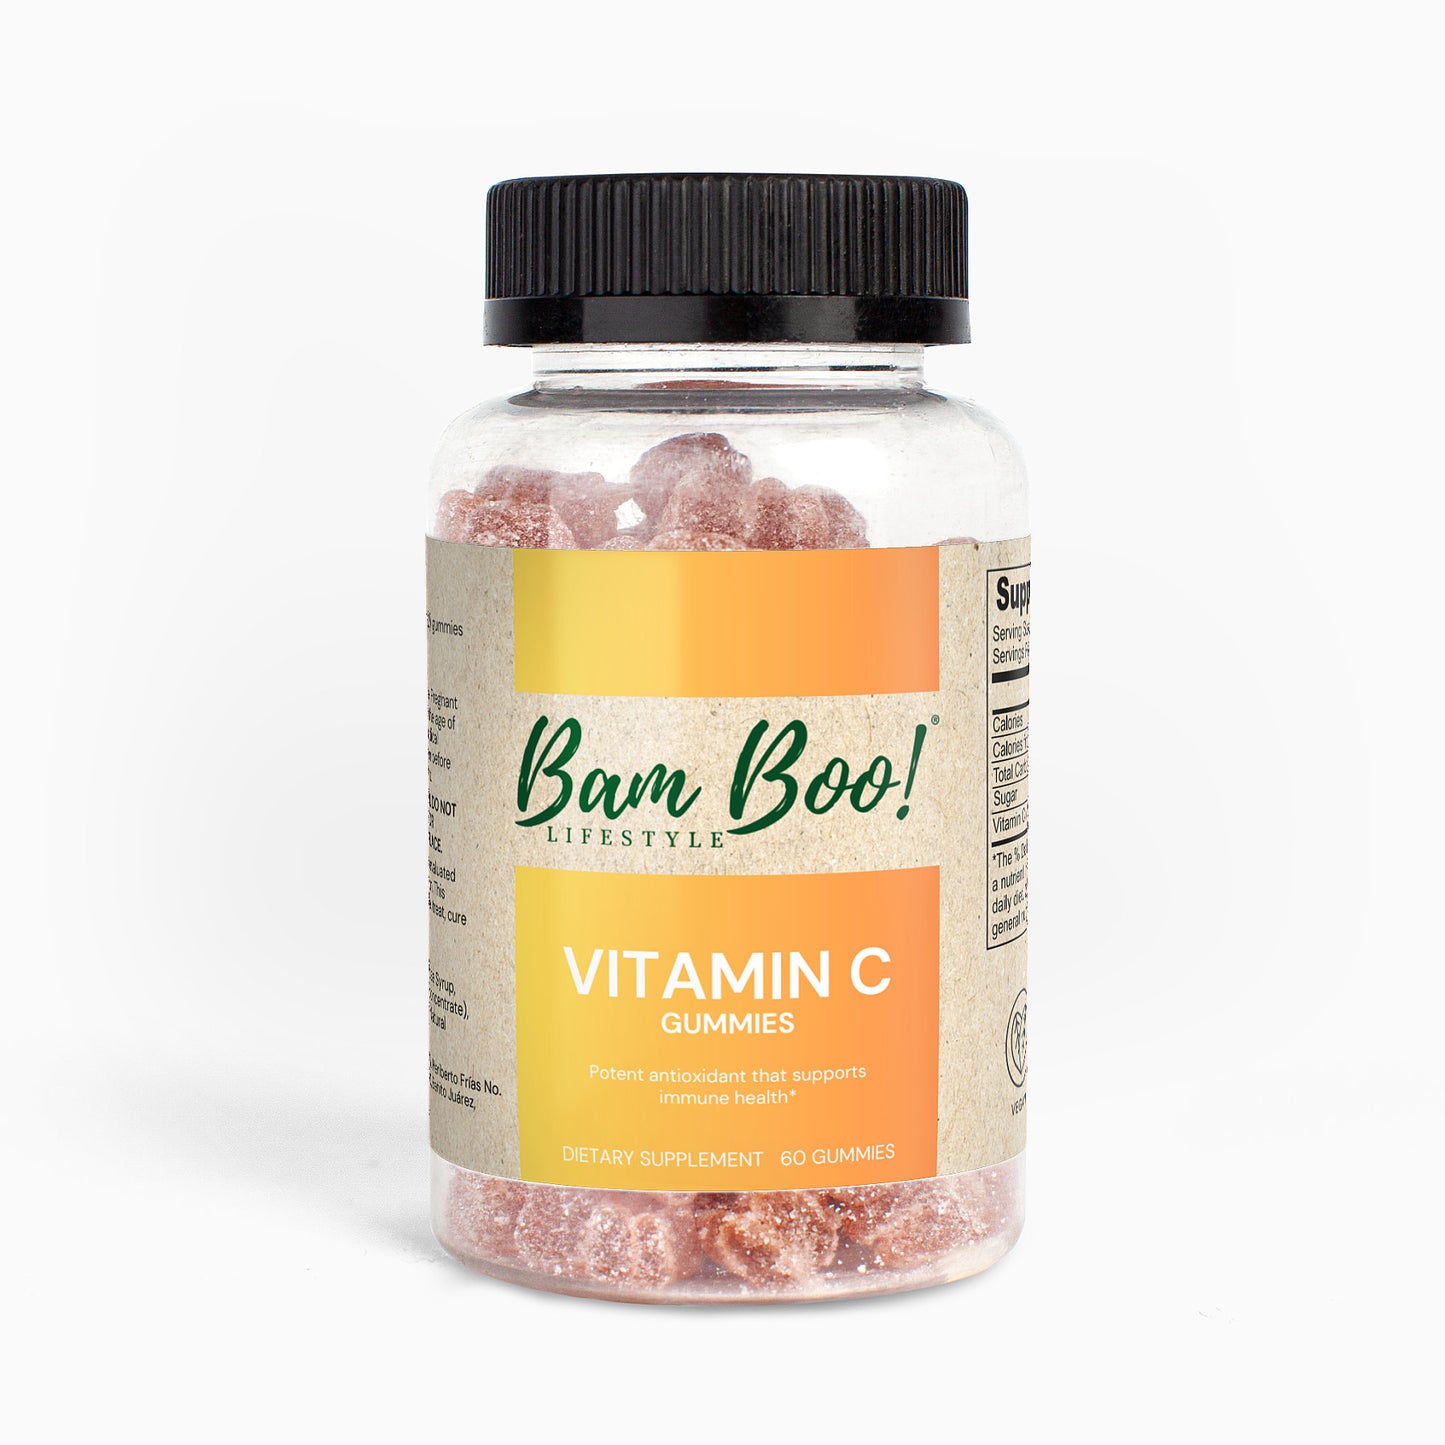 Vitamin C Gummies 60 Gummies Bam Boo! Lifestyle Vitamins & Supplements